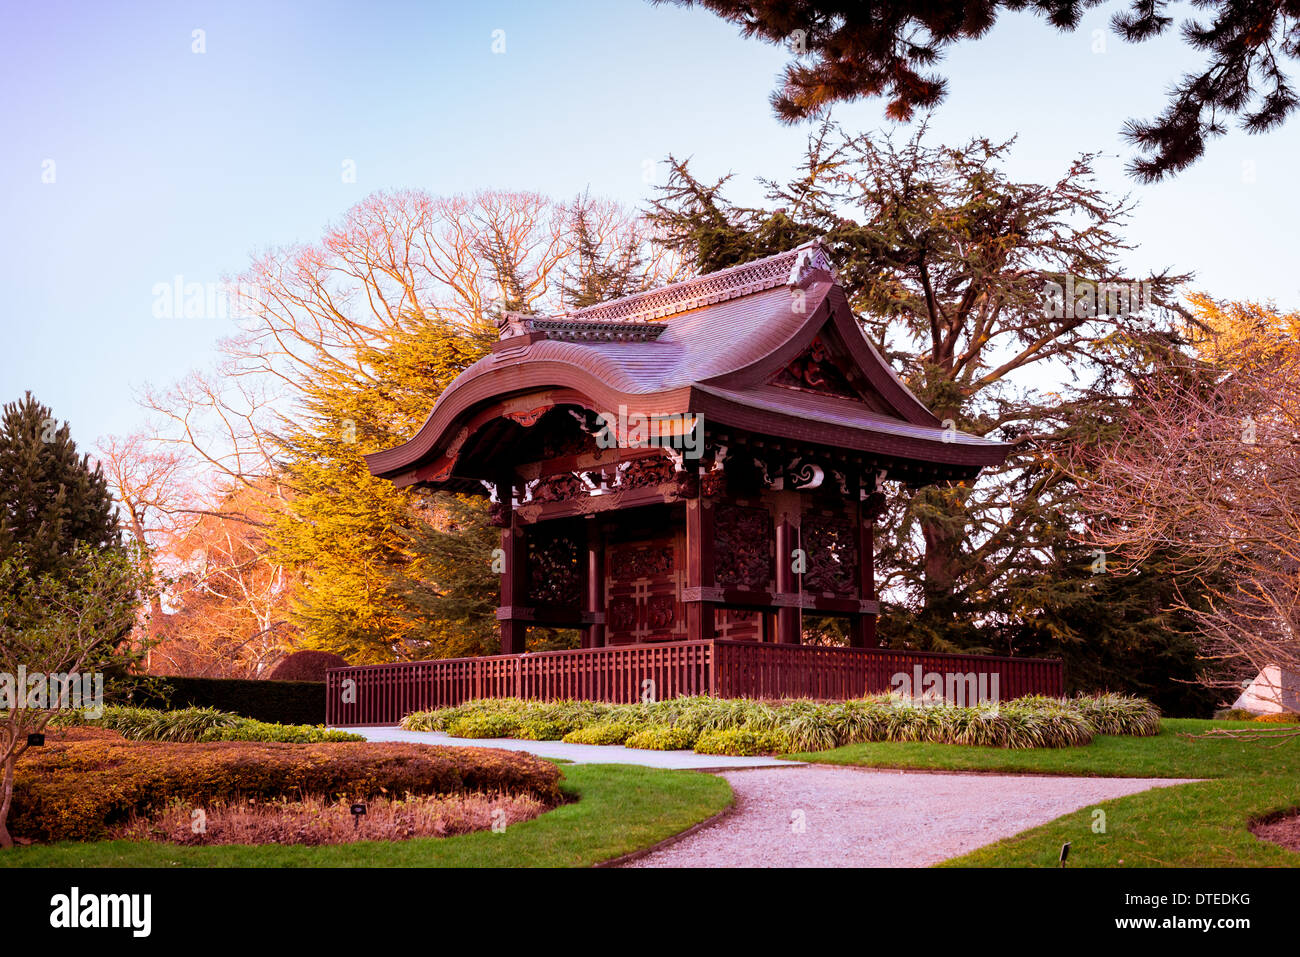 Kew Gardens Temple Pagoda Rock Garden Stock Photo